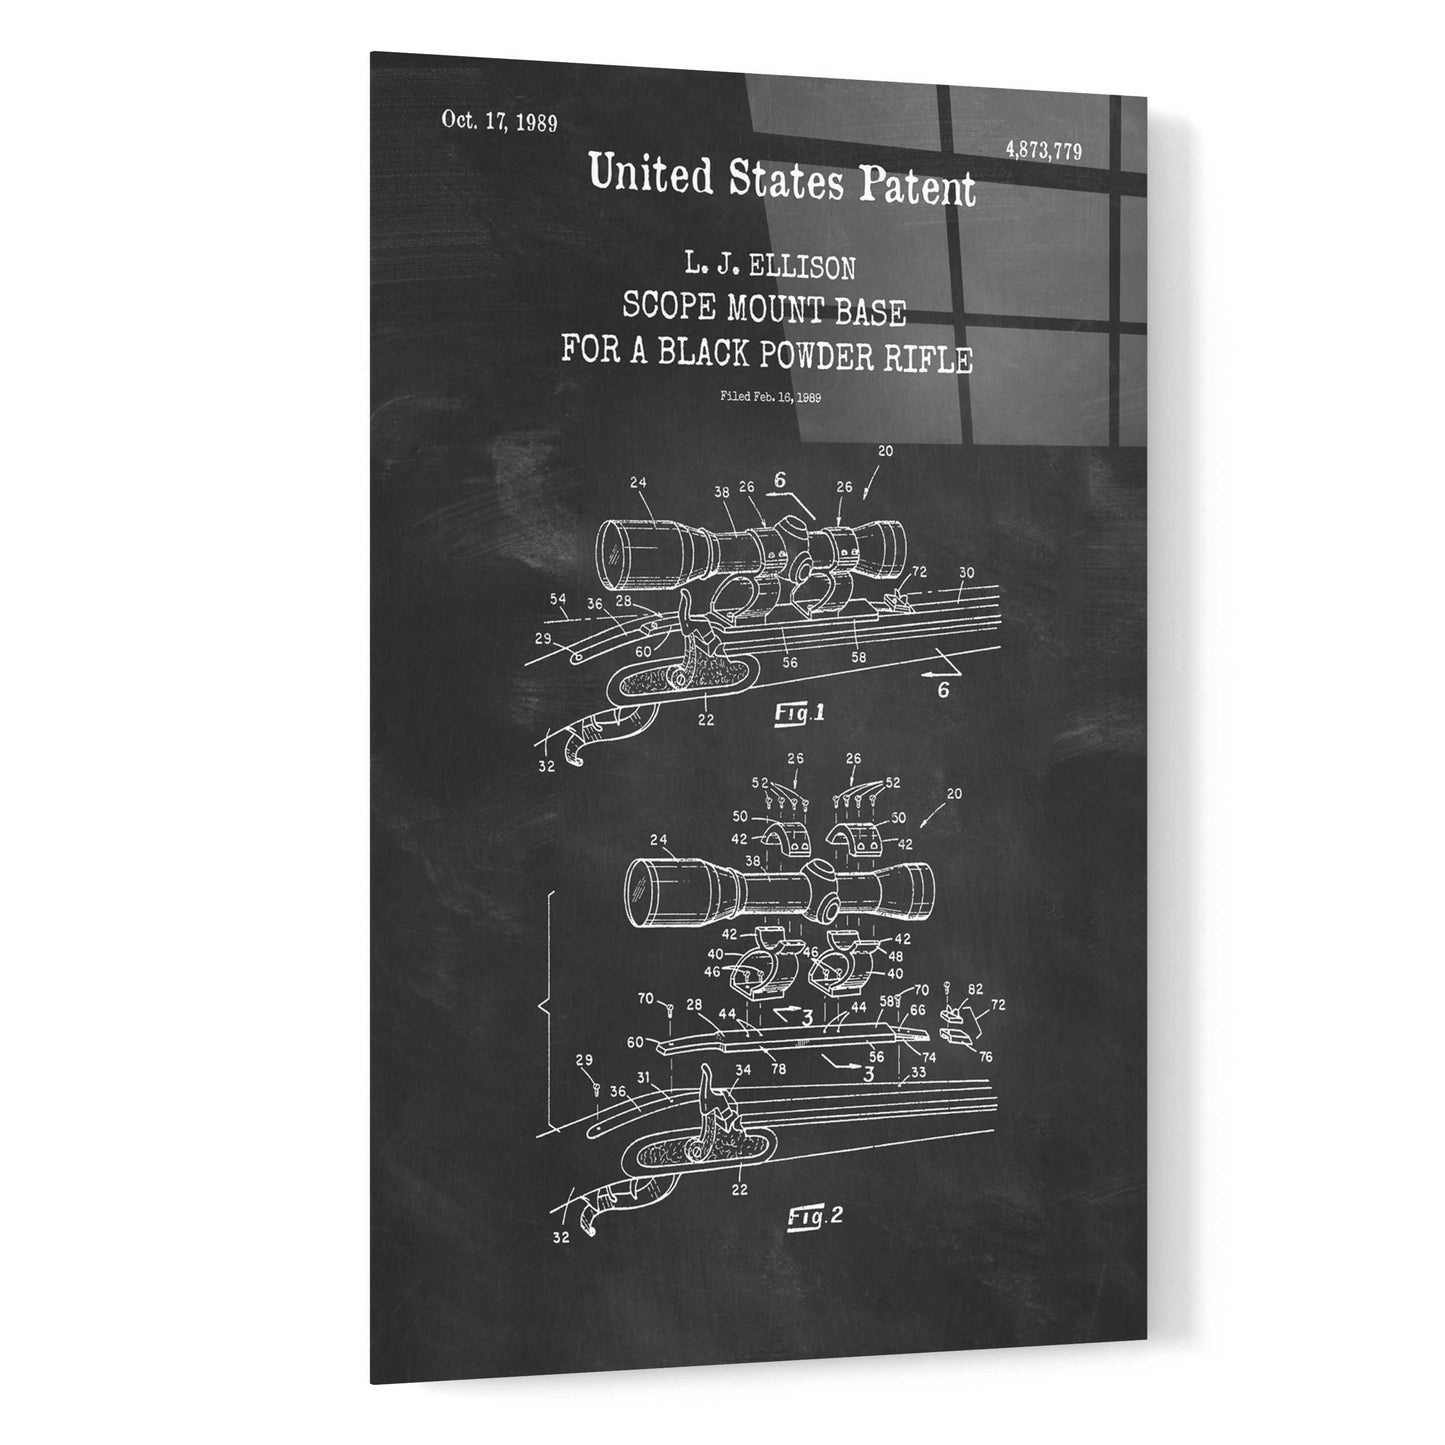 Epic Art 'Scope mount base Blueprint Patent Chalkboard,' Acrylic Glass Wall Art,16x24